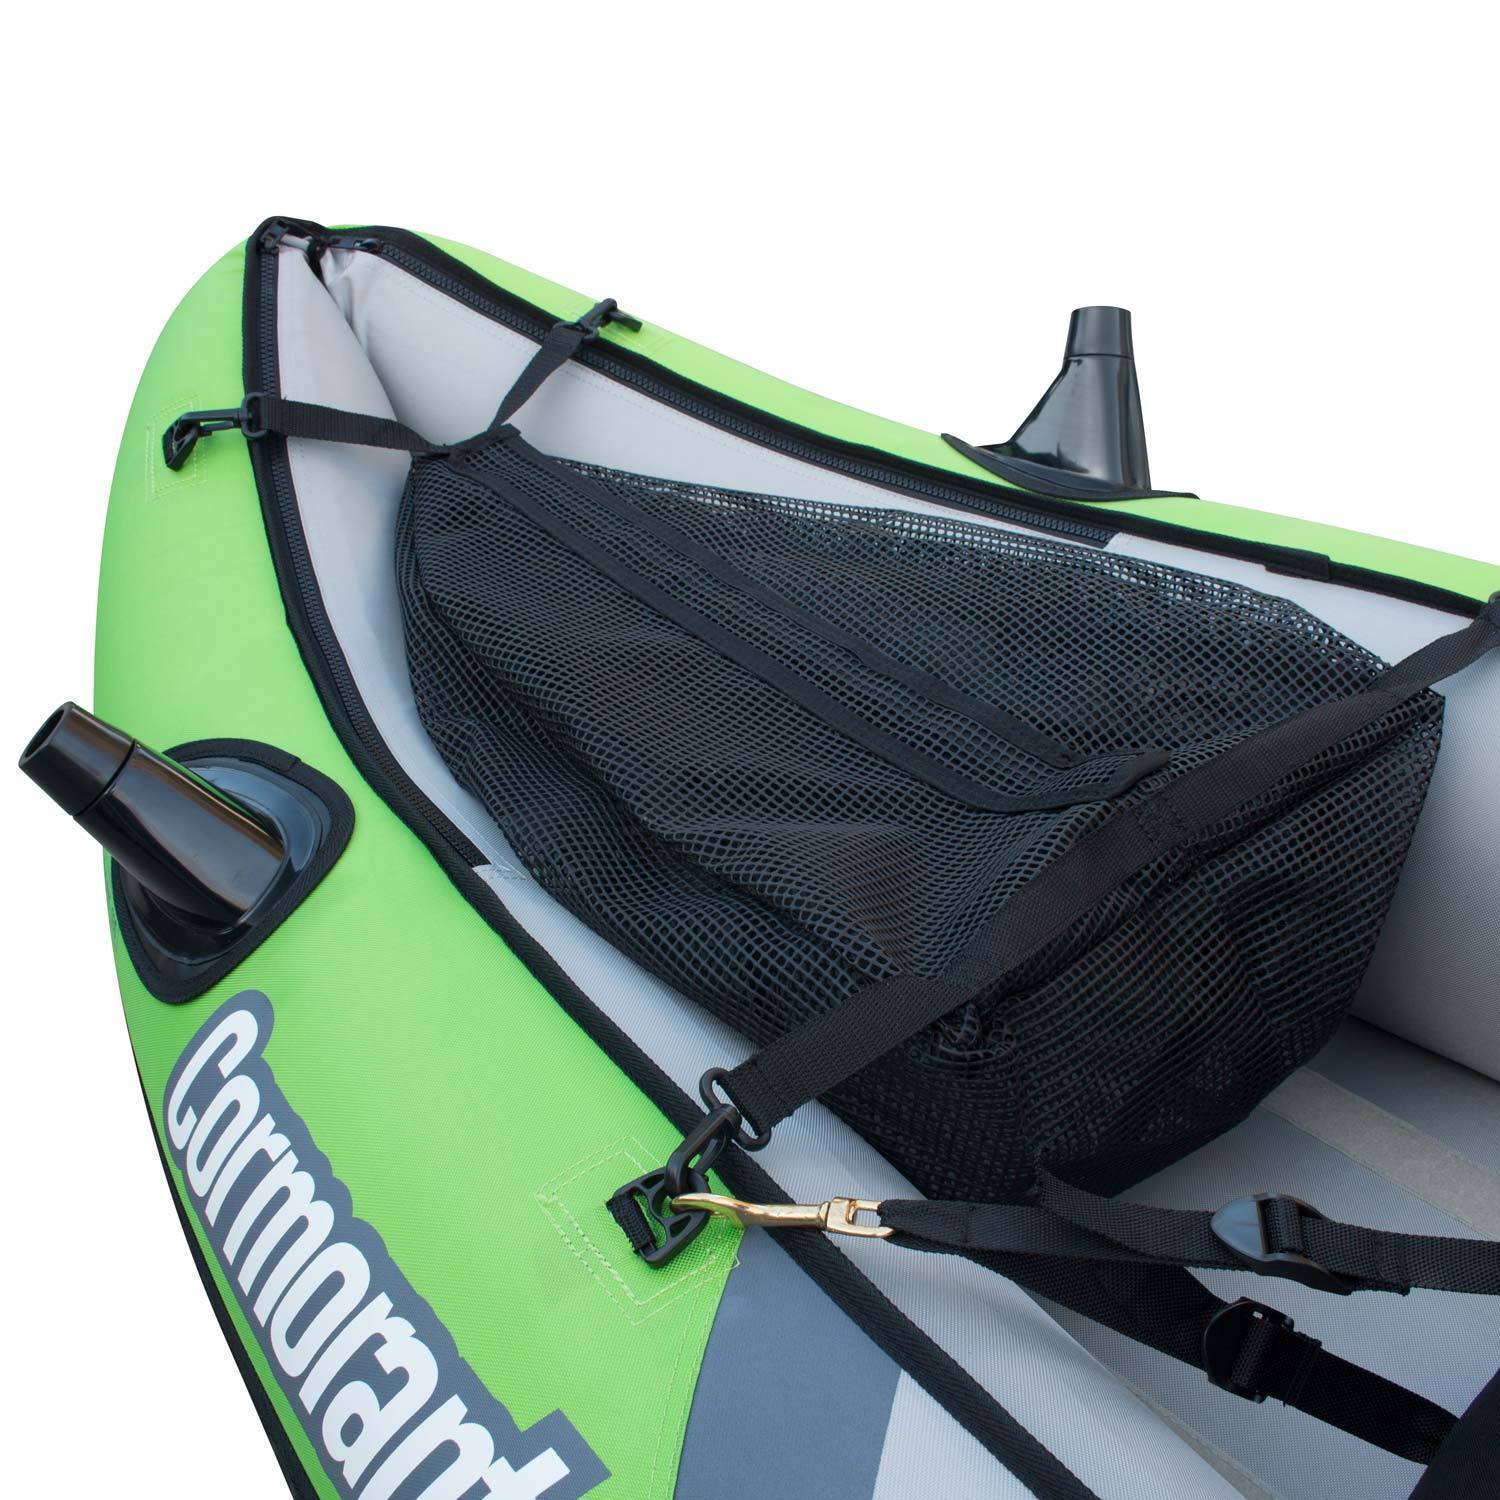 Elkton Outdoors Comorant 2 Person Kayak, 10 Foot Inflatable Fishing Kayak, Full Kit! - image 5 of 11